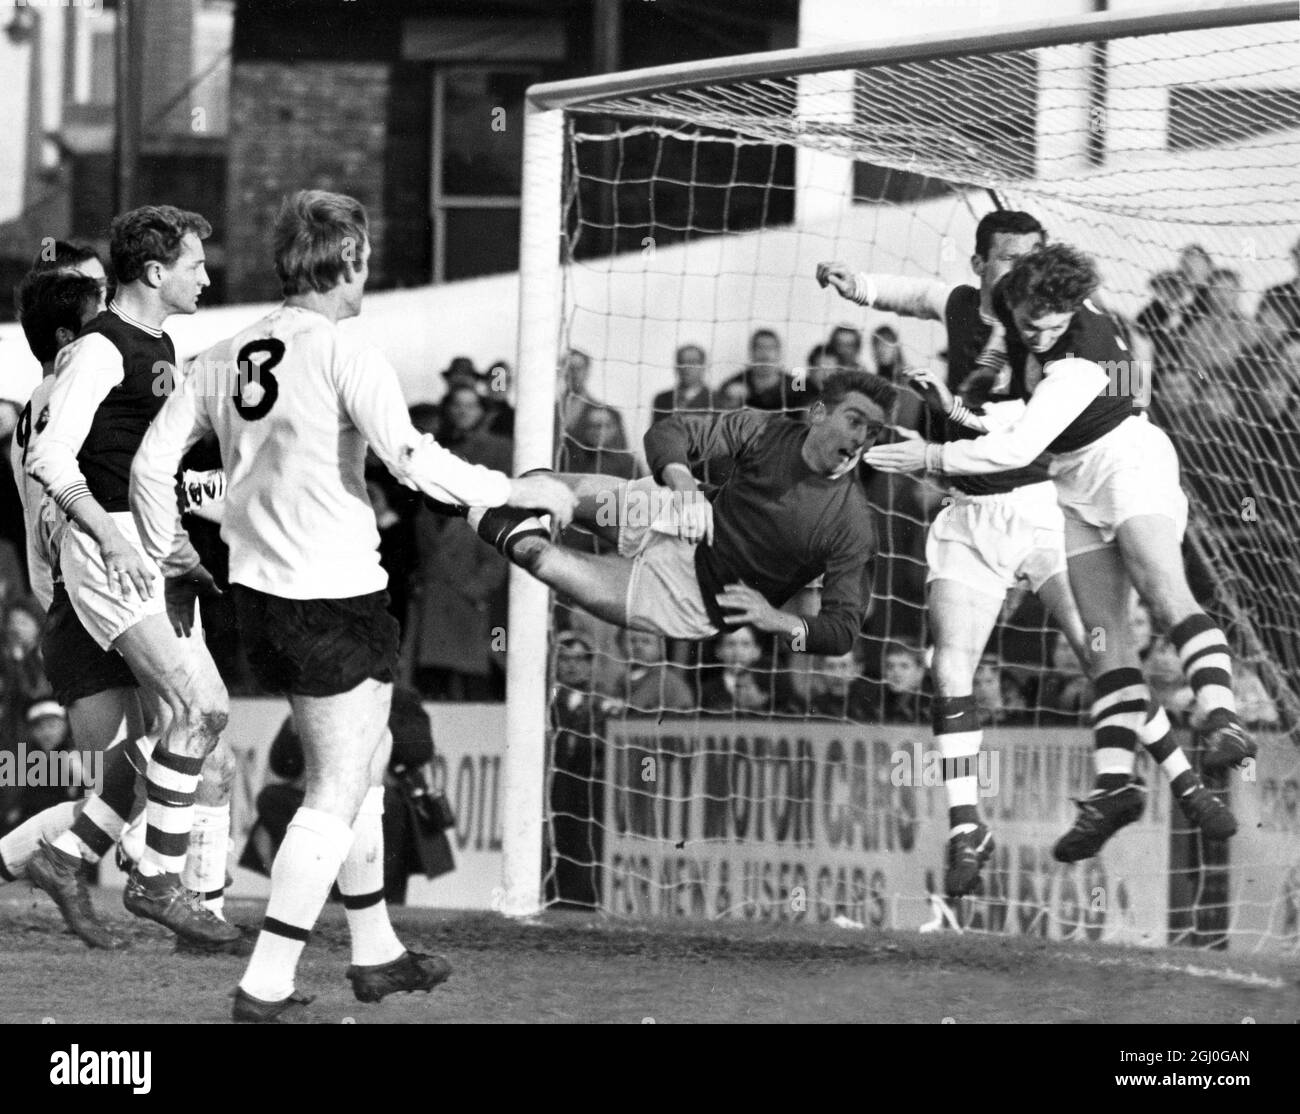 Fulham gegen Northampton Town Norman Coe, Torwart von Northampton, wird in der Luft in seinem Tormund im Craven Cottage gefangen. COE verpasste den Ball, aber Vic Cockcroft (rechts) war links hinten da, um eine Ecke zu nehmen. Der Vorfall ereignete sich in der ersten Hälfte des ersten Spiels von Dvision. Der Fulham-Spieler (Nr. 8) ist Rodney Marsh. Der andere Spieler im Tormund ist Theo Foley. November 1965 Stockfoto